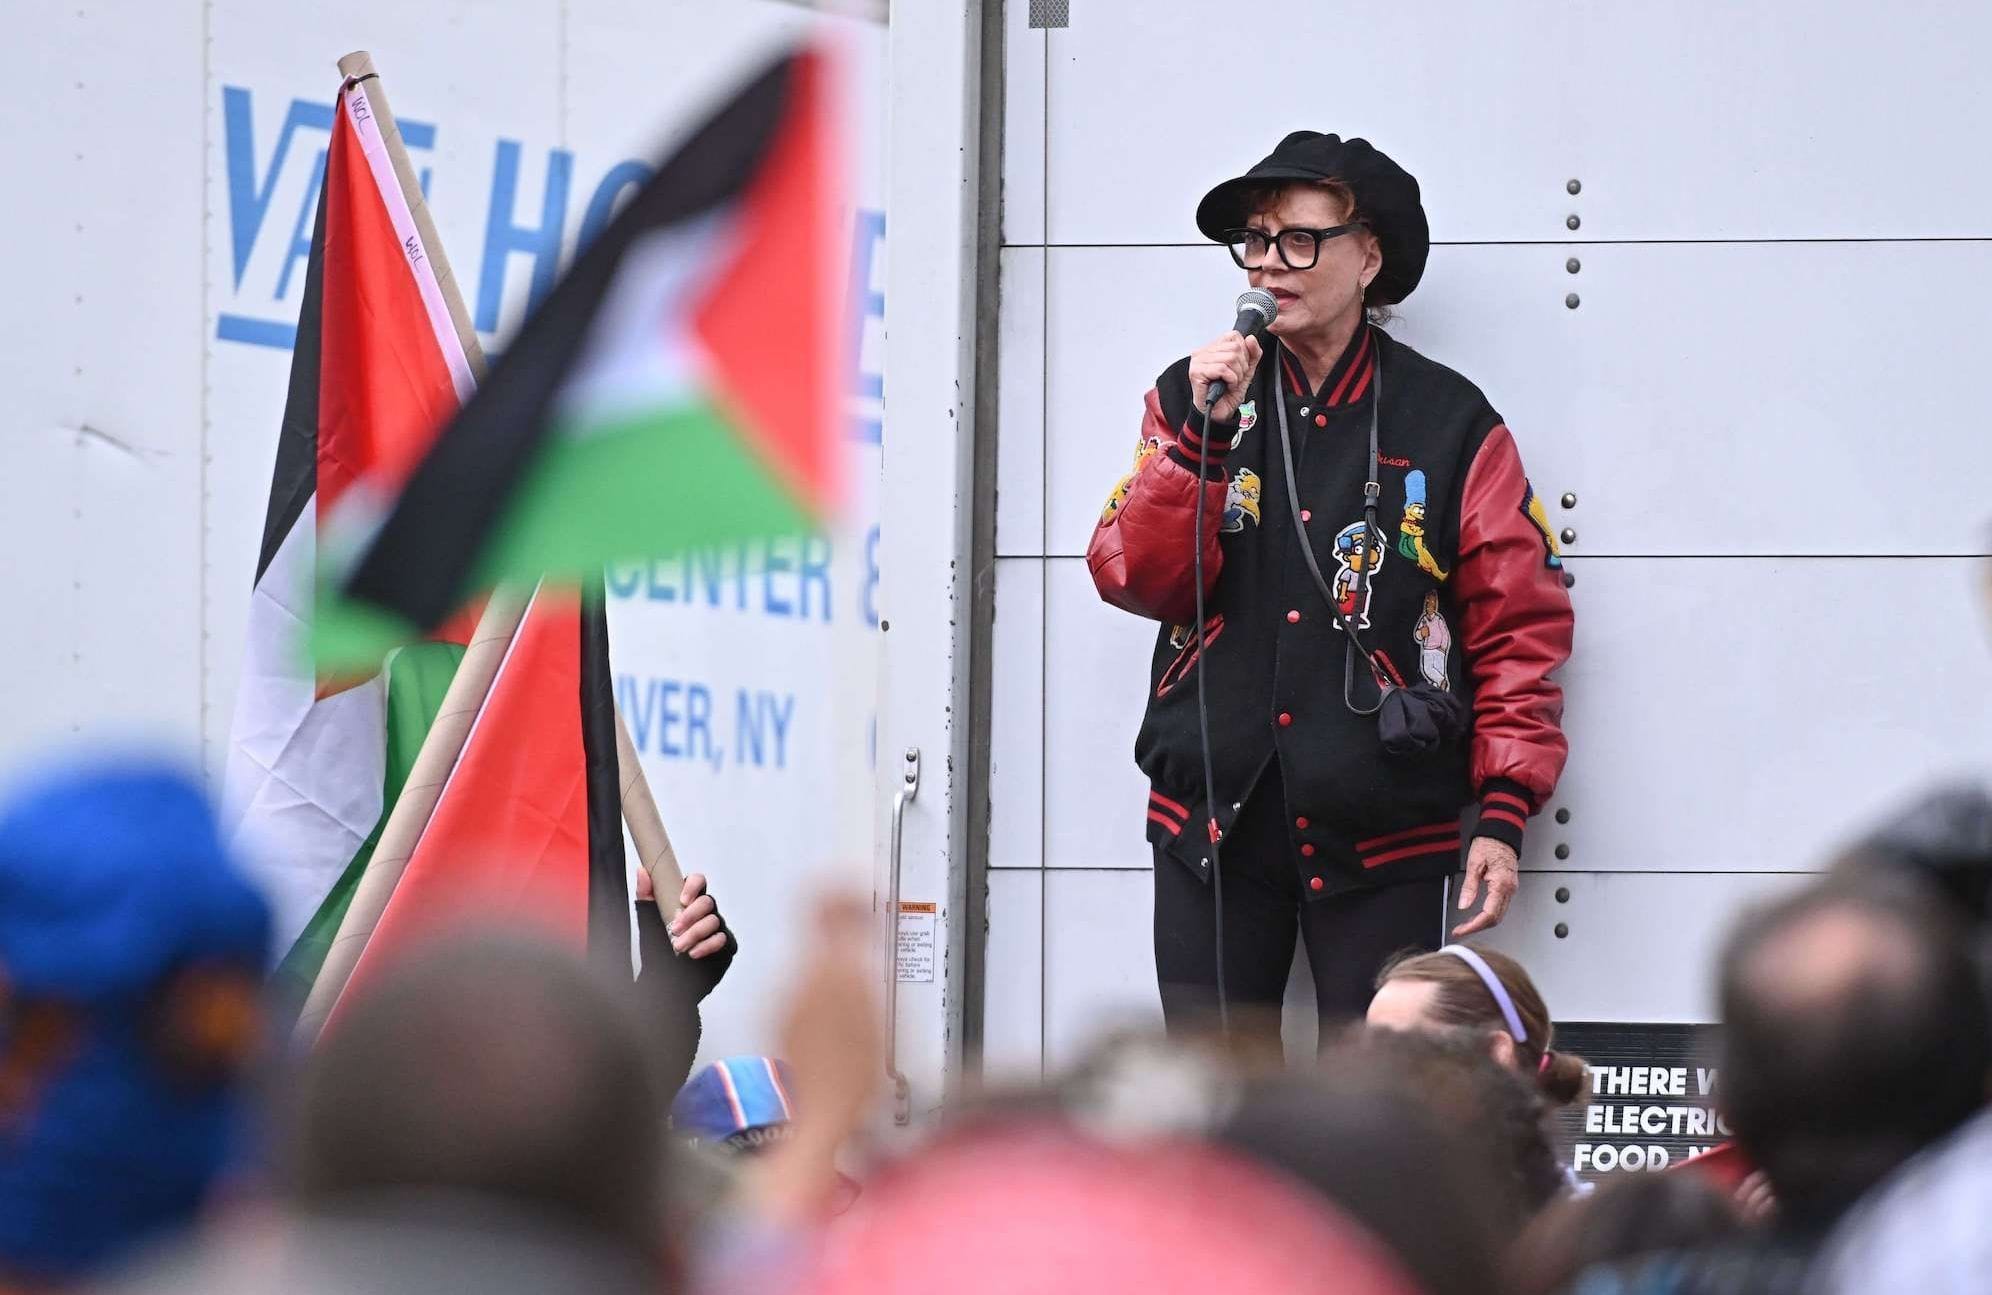 Susan-Sarandon-ecartee-de-son-agence-apres-ses-declarations-lors-d-une-manifestation-pro-Palestine.jpg